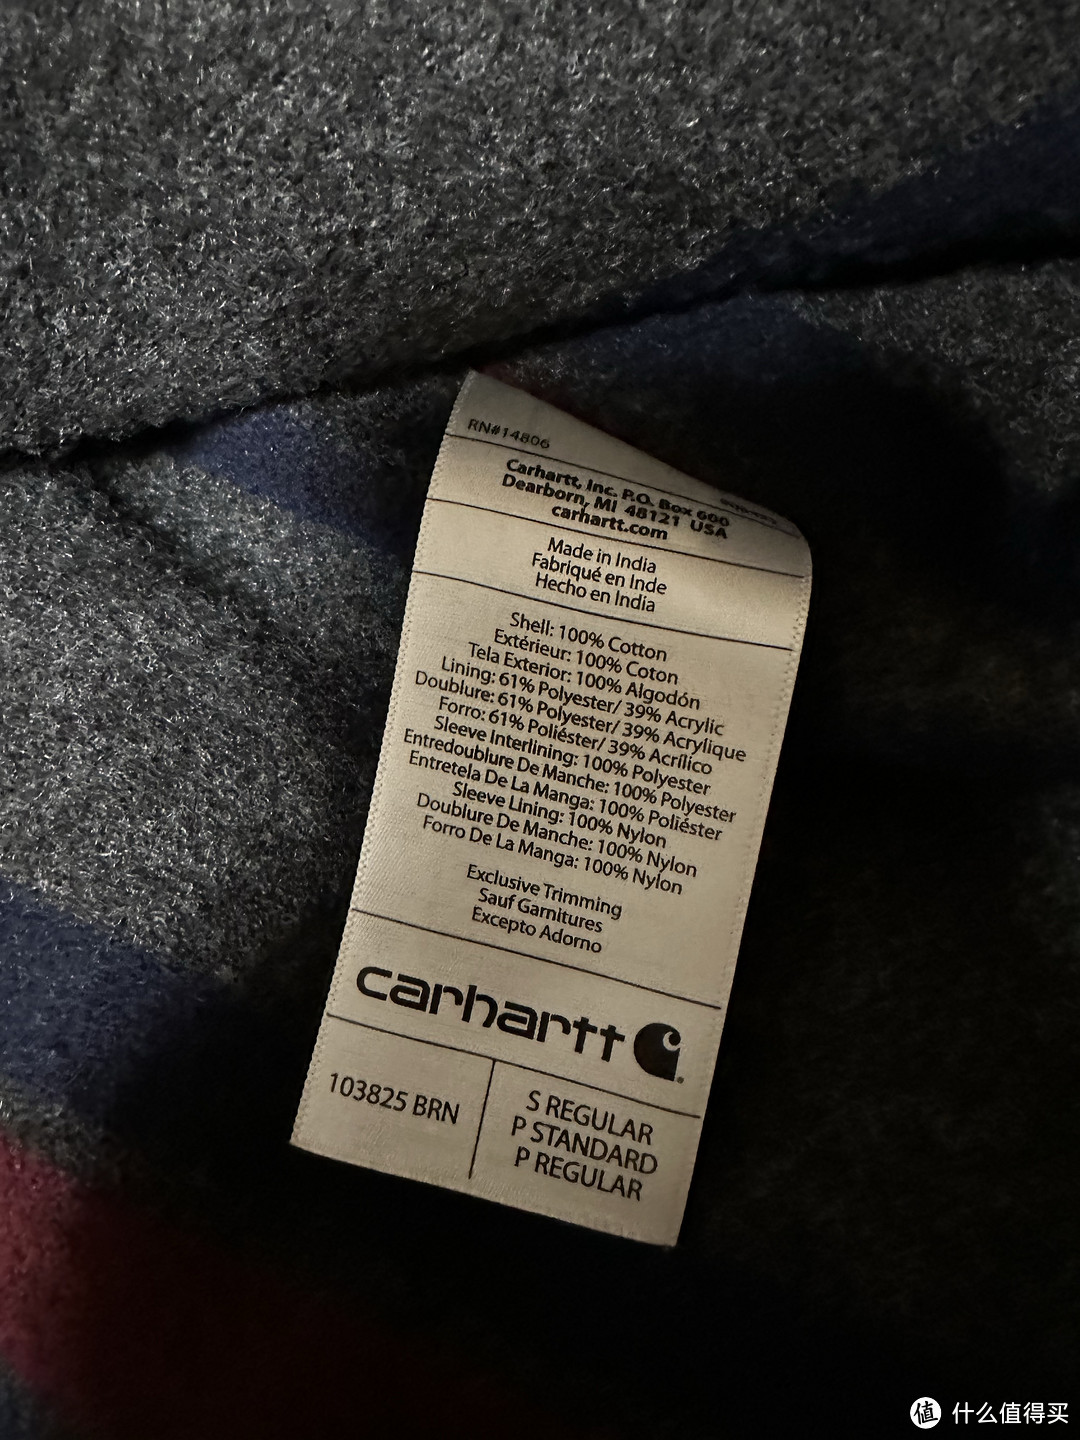 入坑以来第一次买主线的全新外套：卡哈特carhartt 103825 密歇根外套 经典卡哈特棕色